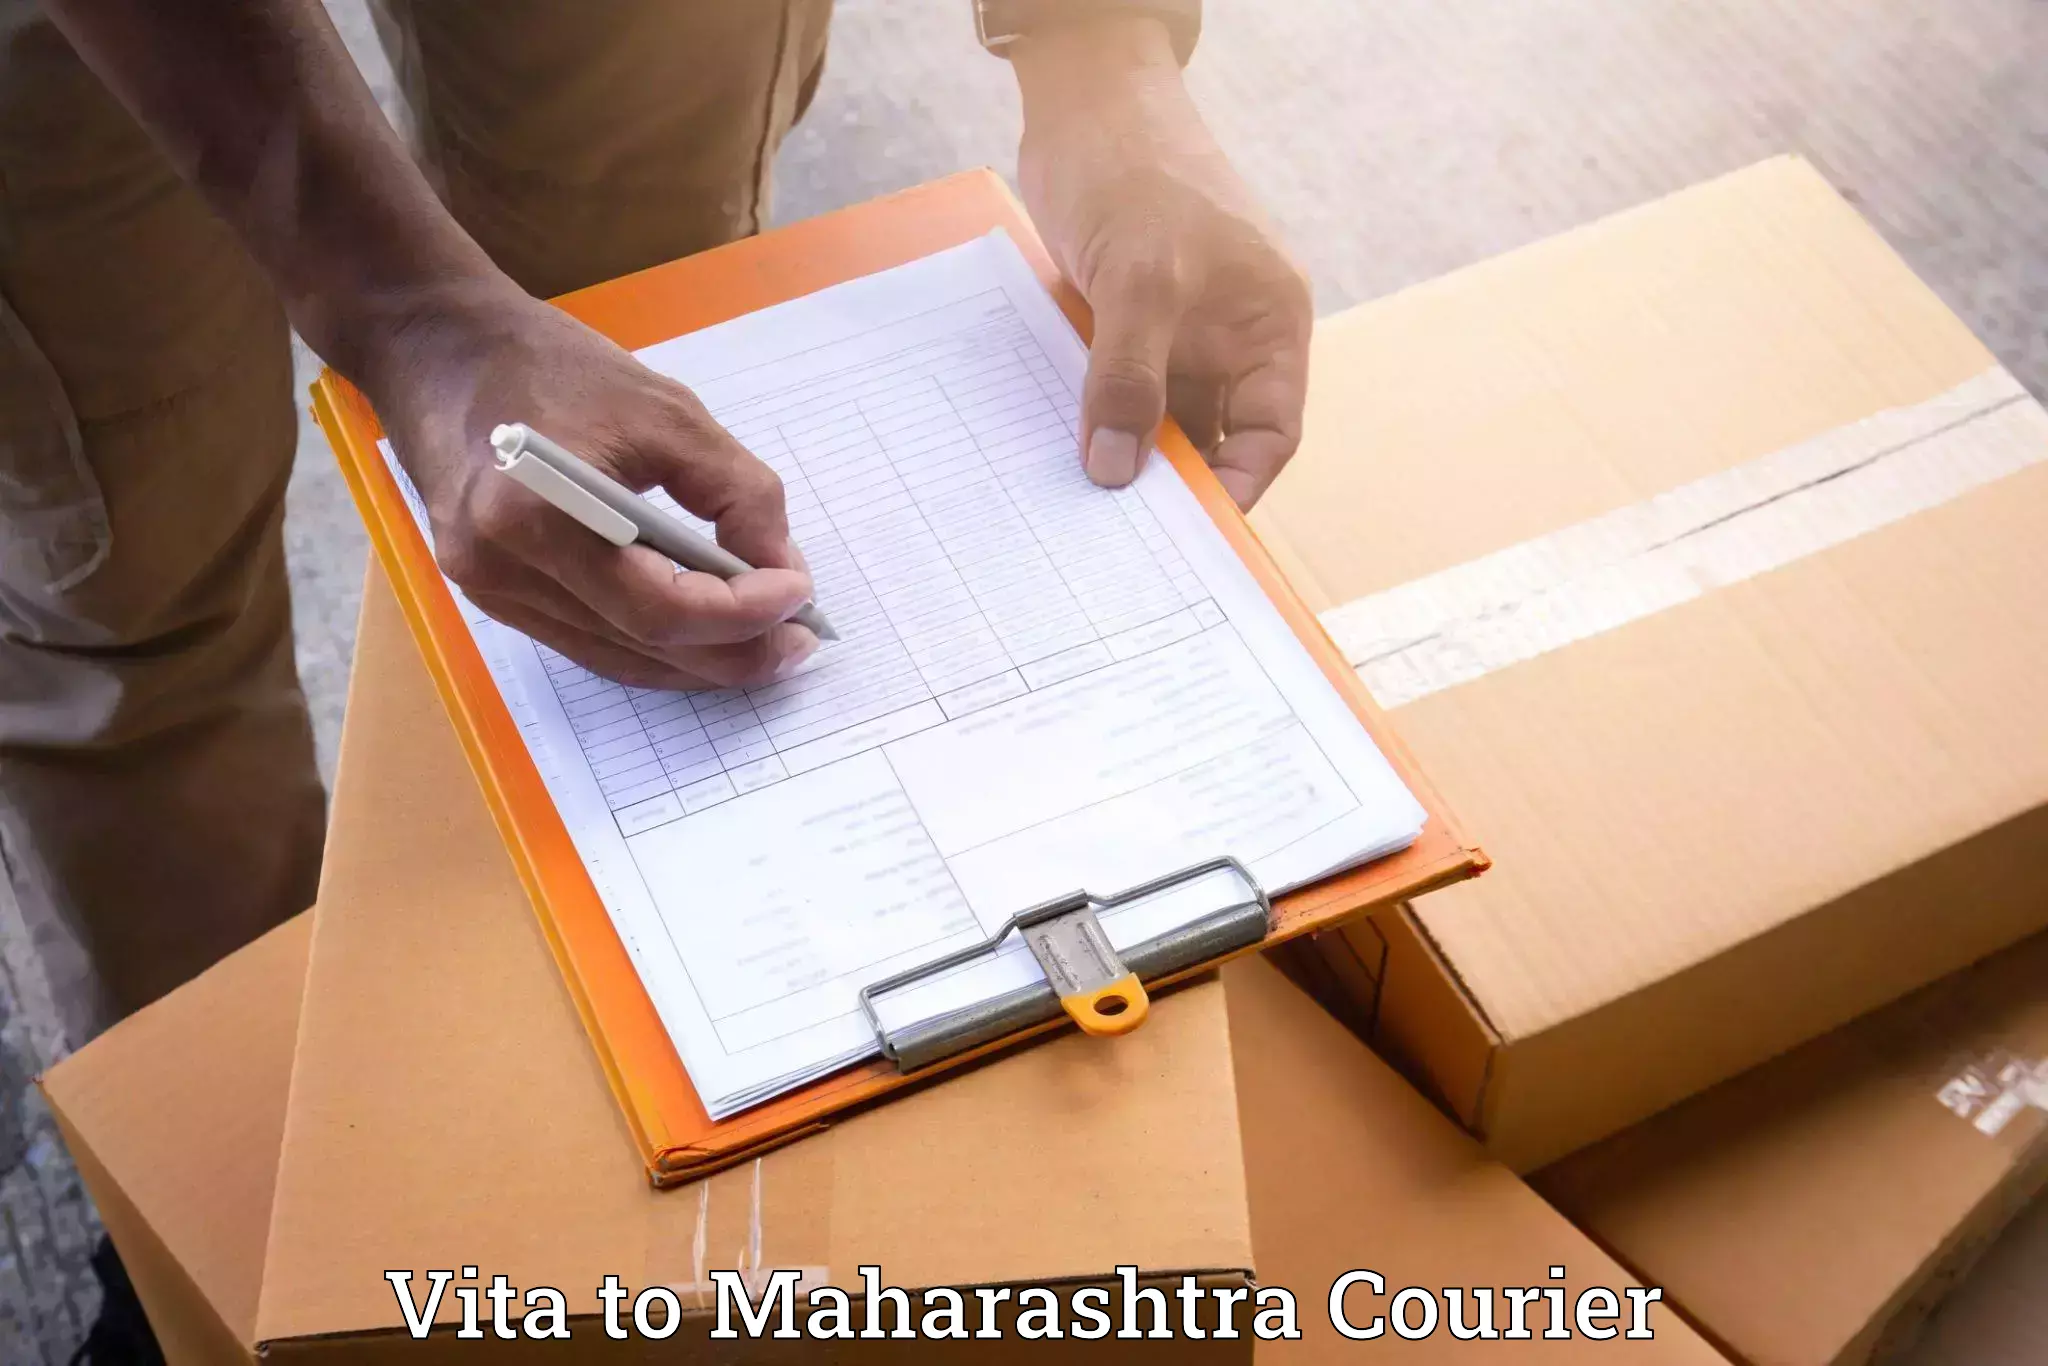 Dependable moving services Vita to Maharashtra